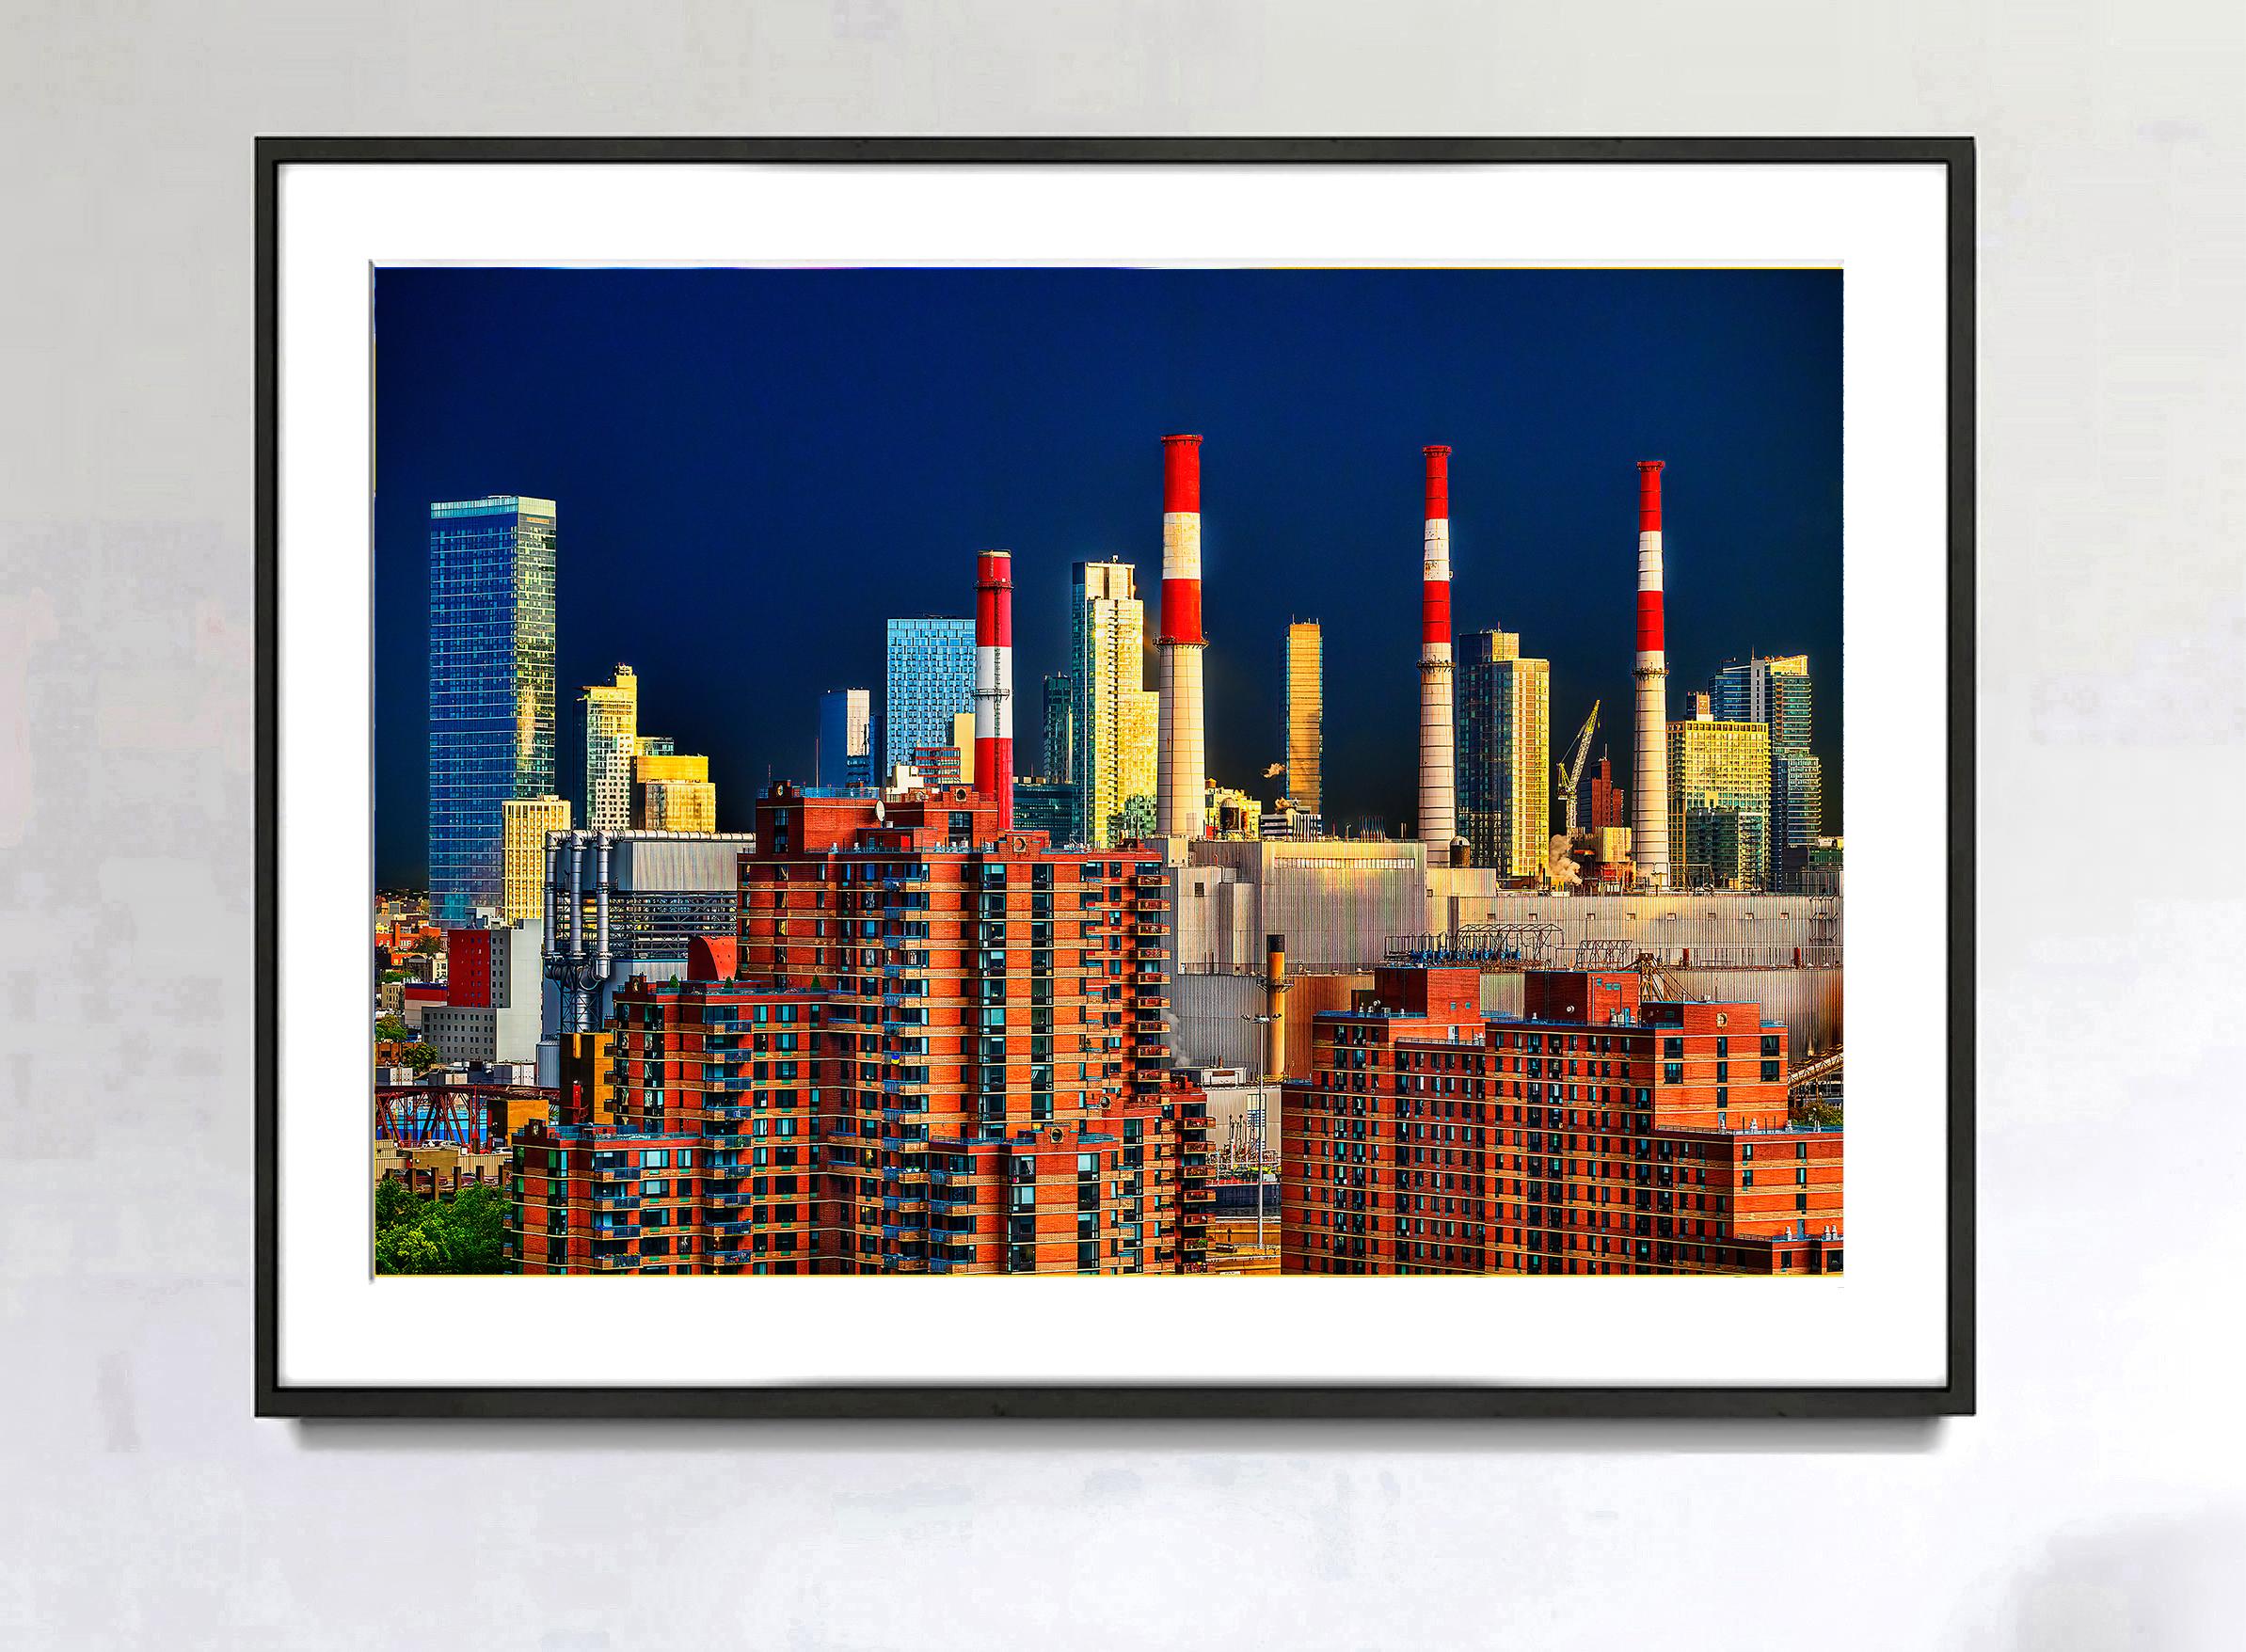  Une nouvelle Skyline est née -  The Manhattan Queens Skyline (L'horizon de Manhattan et du Queens)  - Photograph de Mitchell Funk